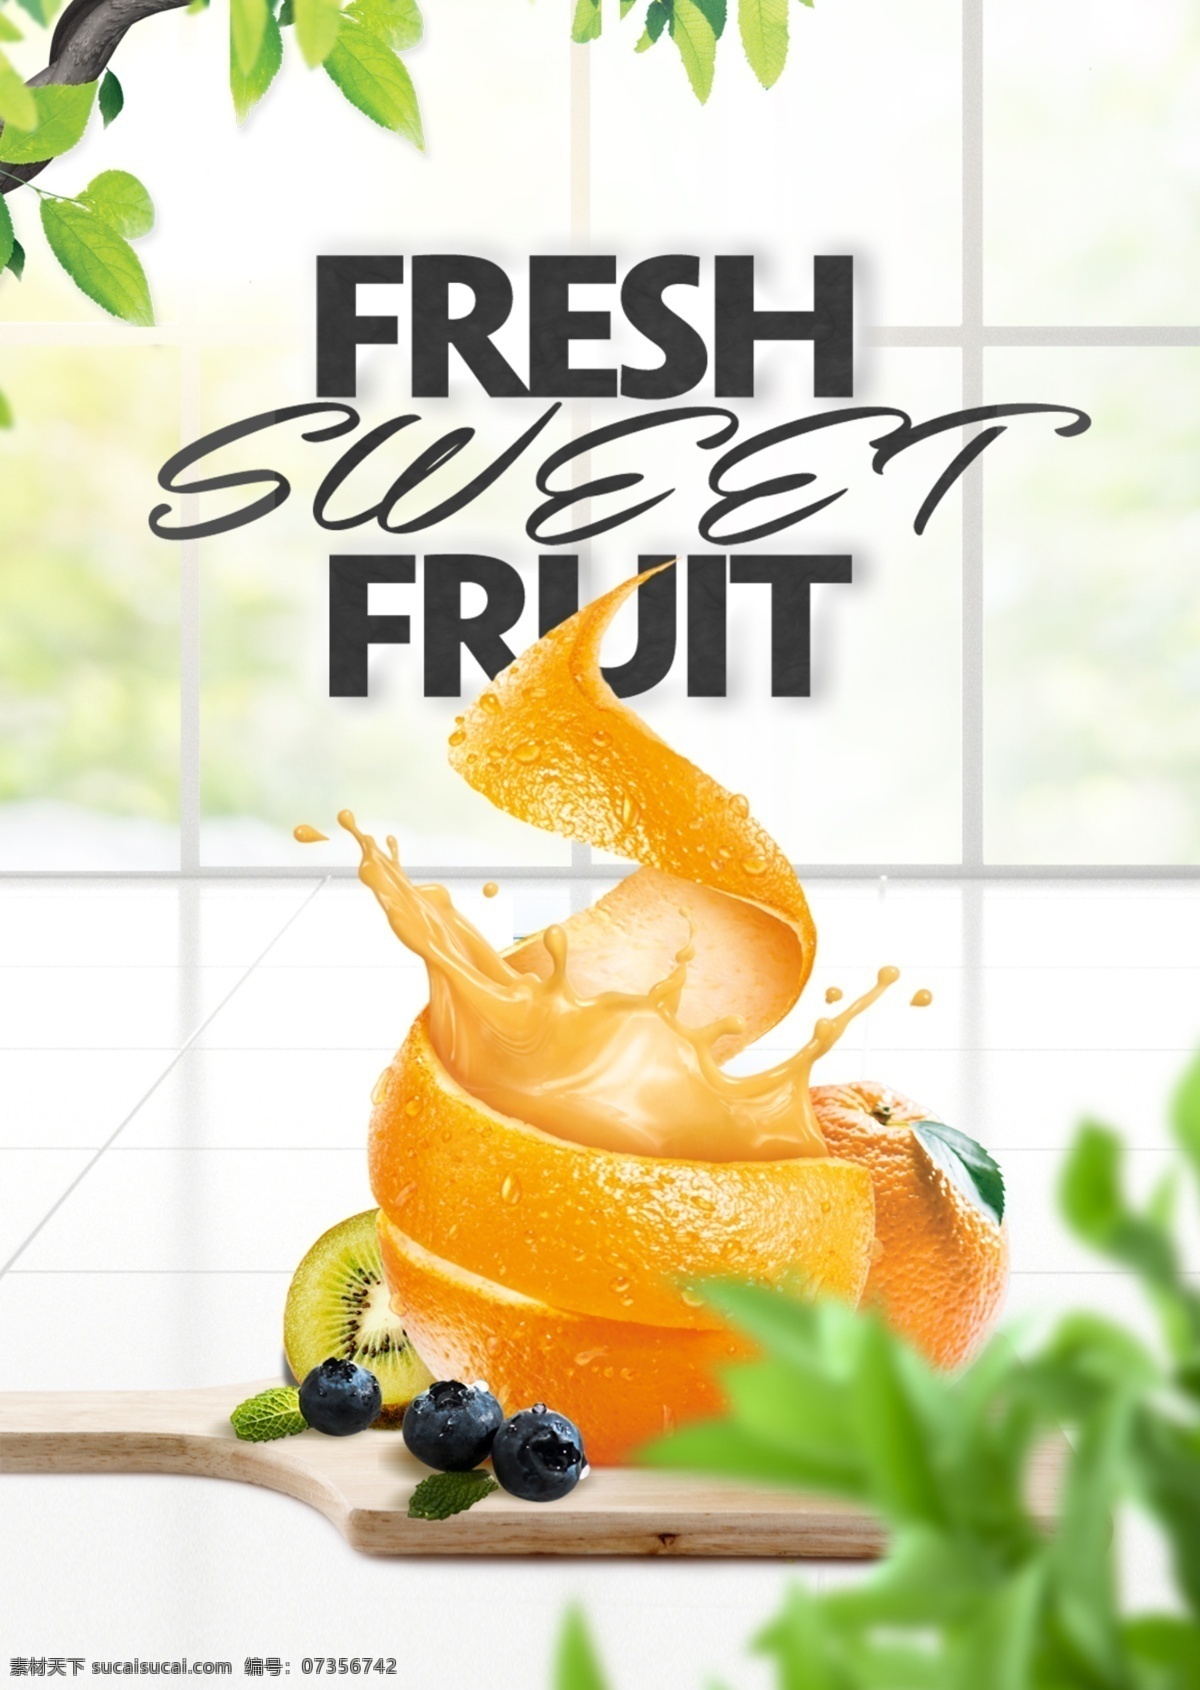 亮色 简单 现代 时尚 新款 橙色 宣传海报 果汁 蓝莓 橘色 叶 自然 清臣 时装 海报 宣传